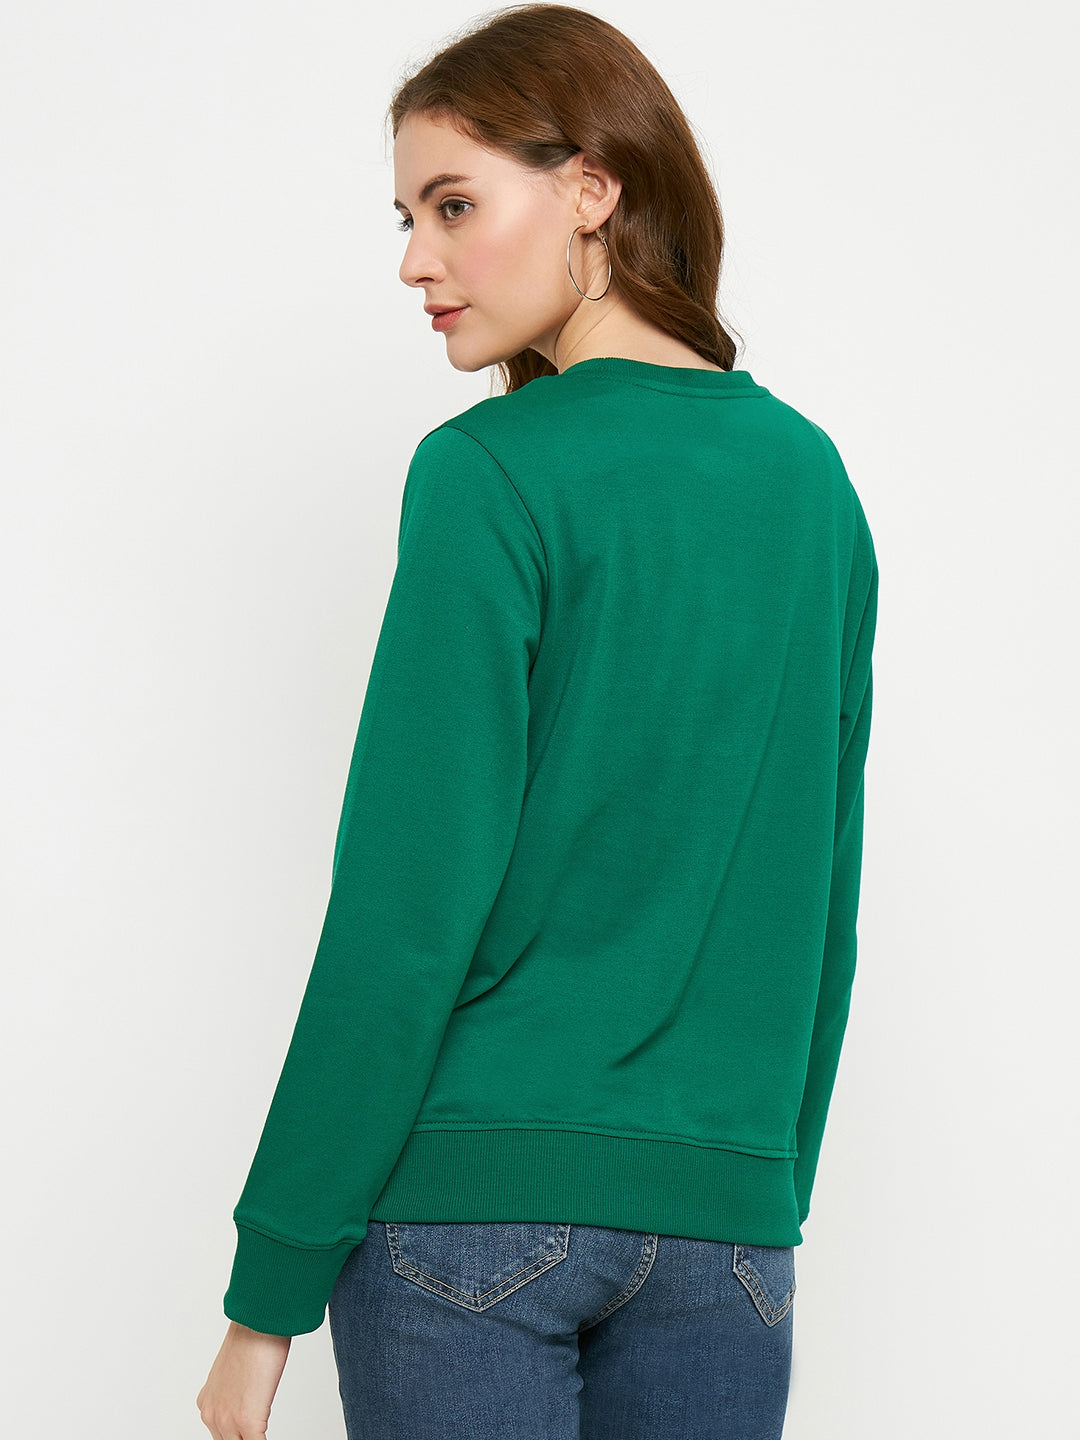 Women's Pearl Sweatshirt